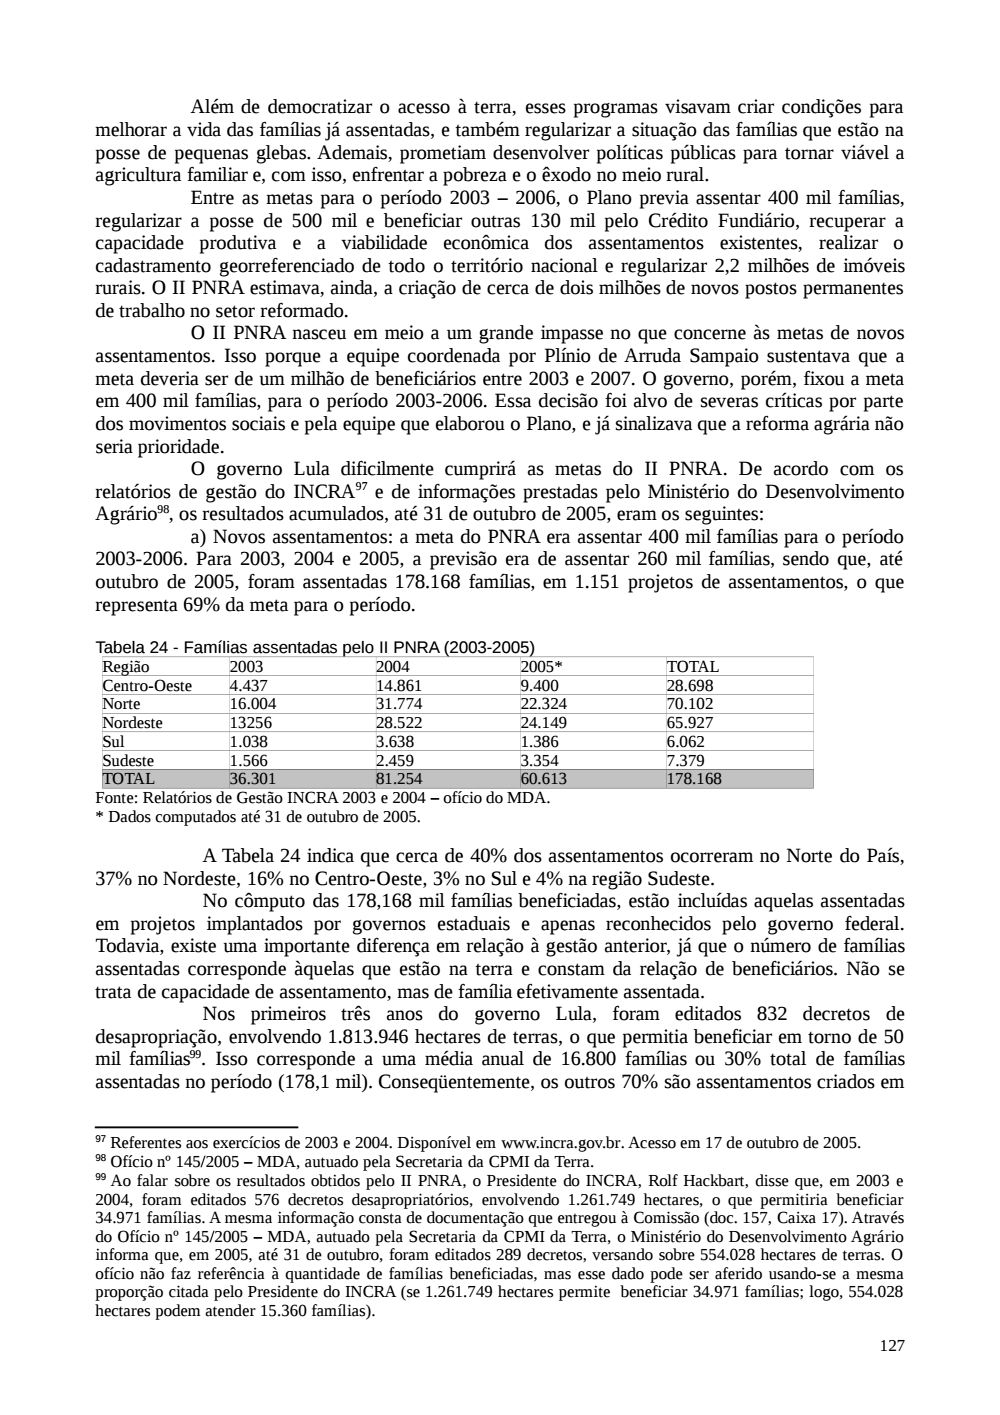 Page 127 from Relatório final da comissão